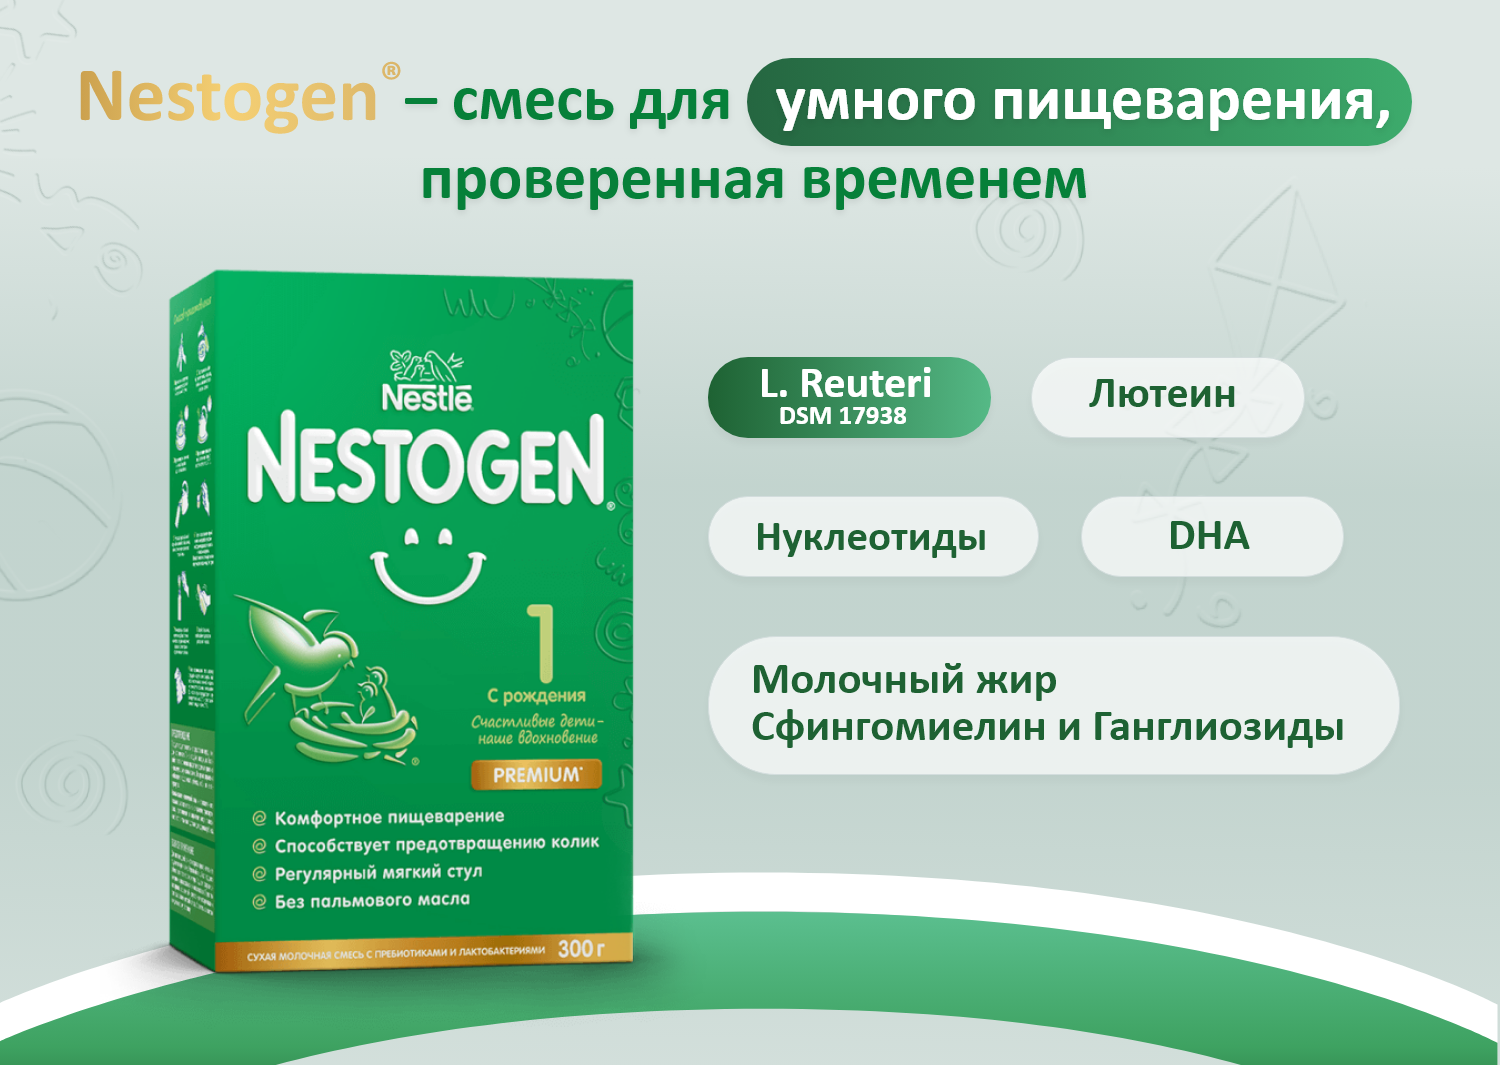 Nestle Nestogen